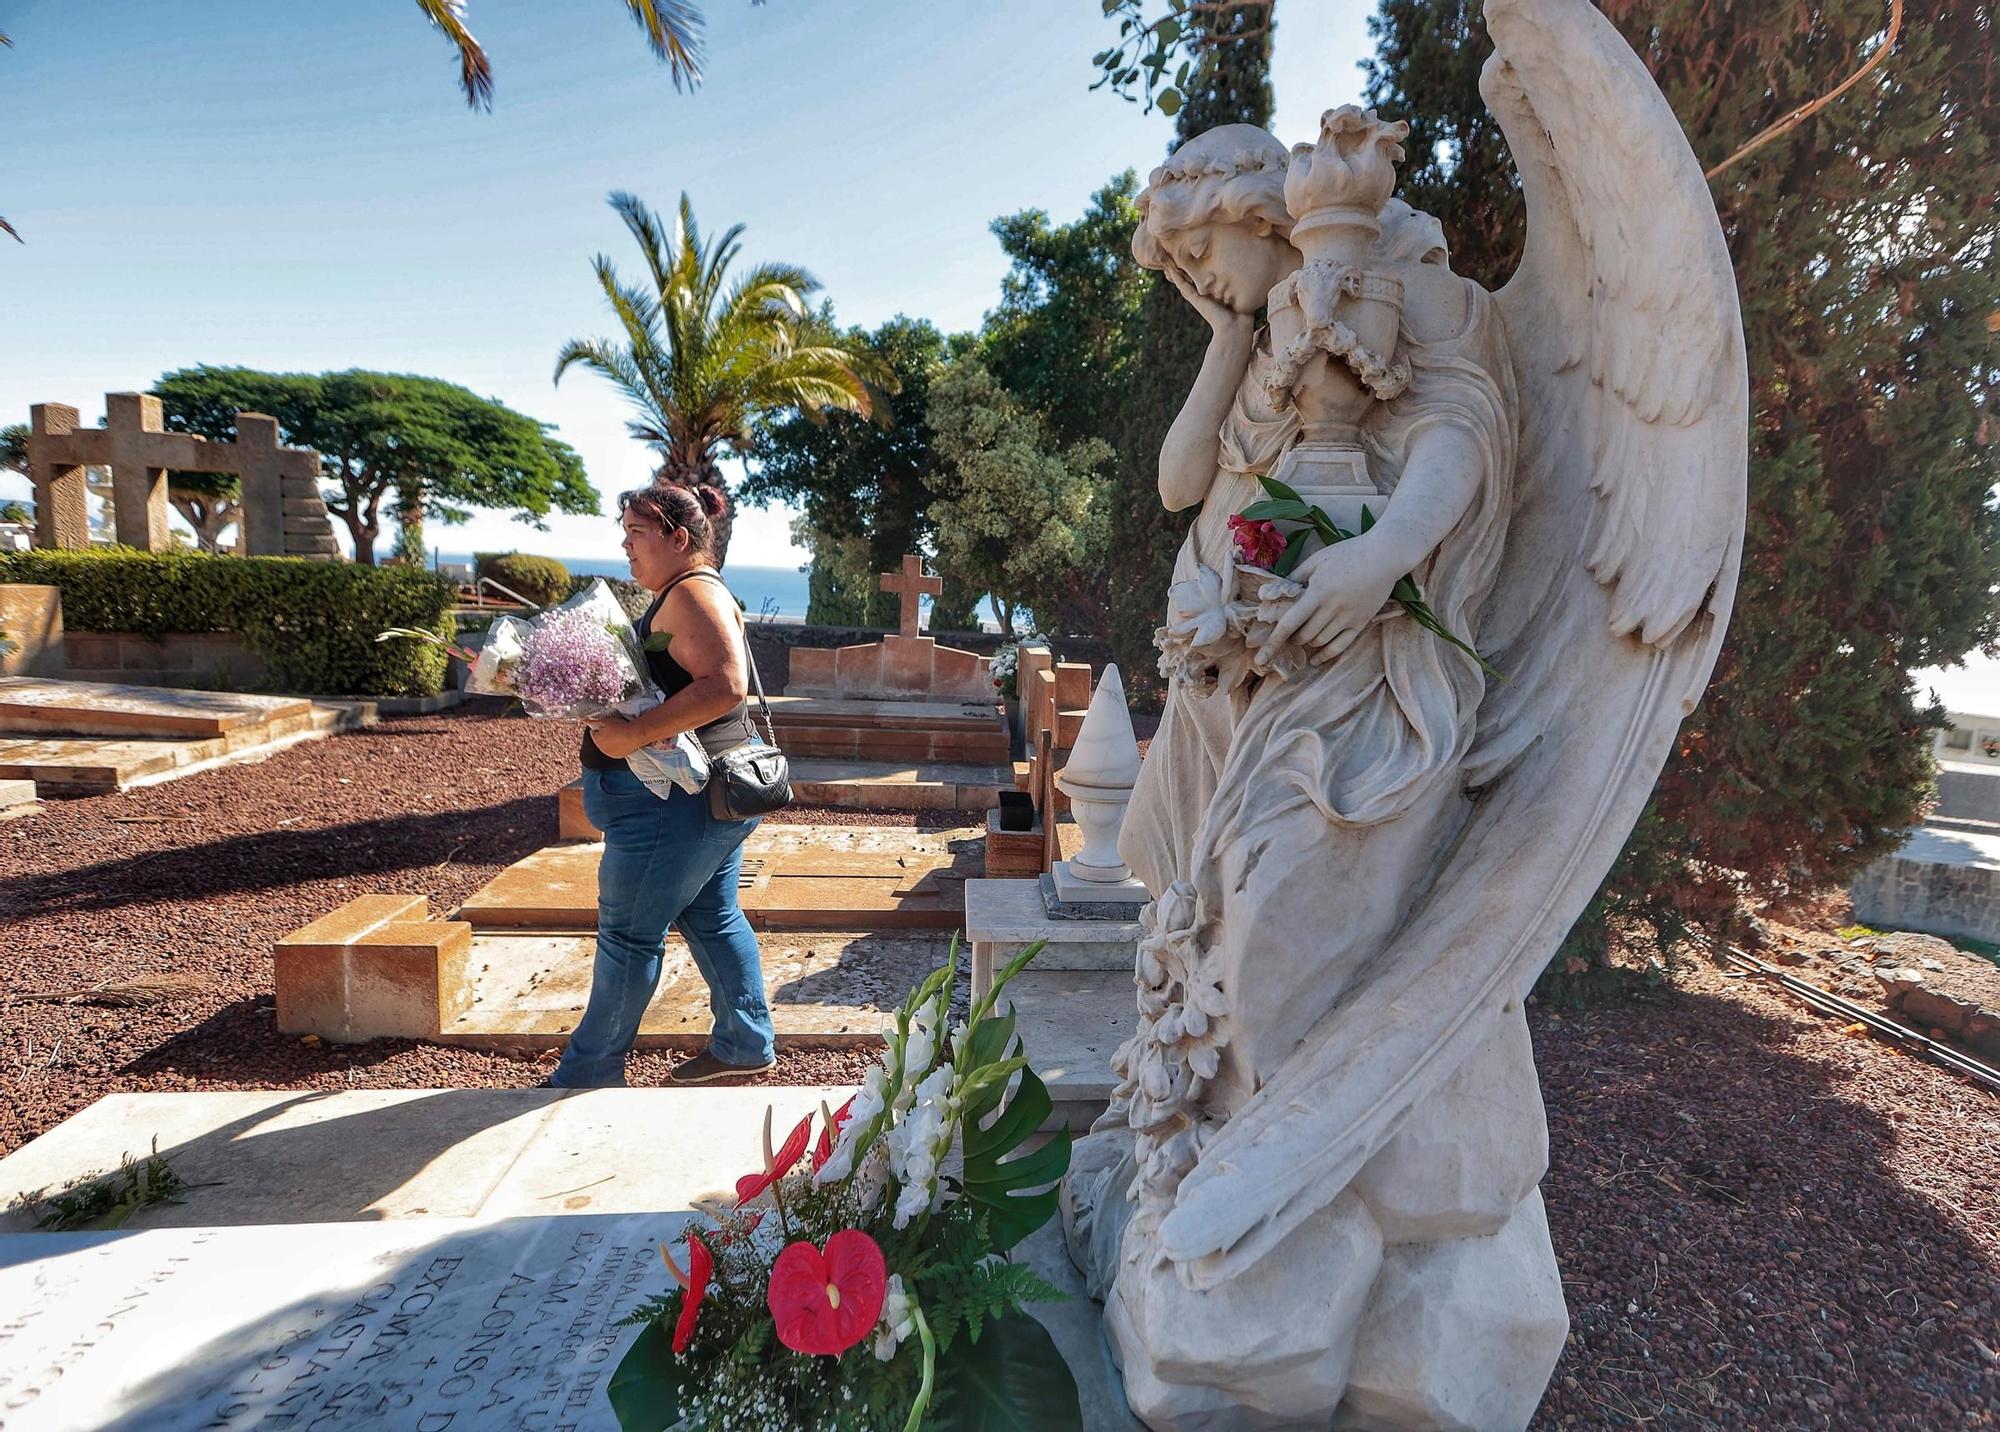 Día de Todos los Santos en el cementerio de Santa Lastenia